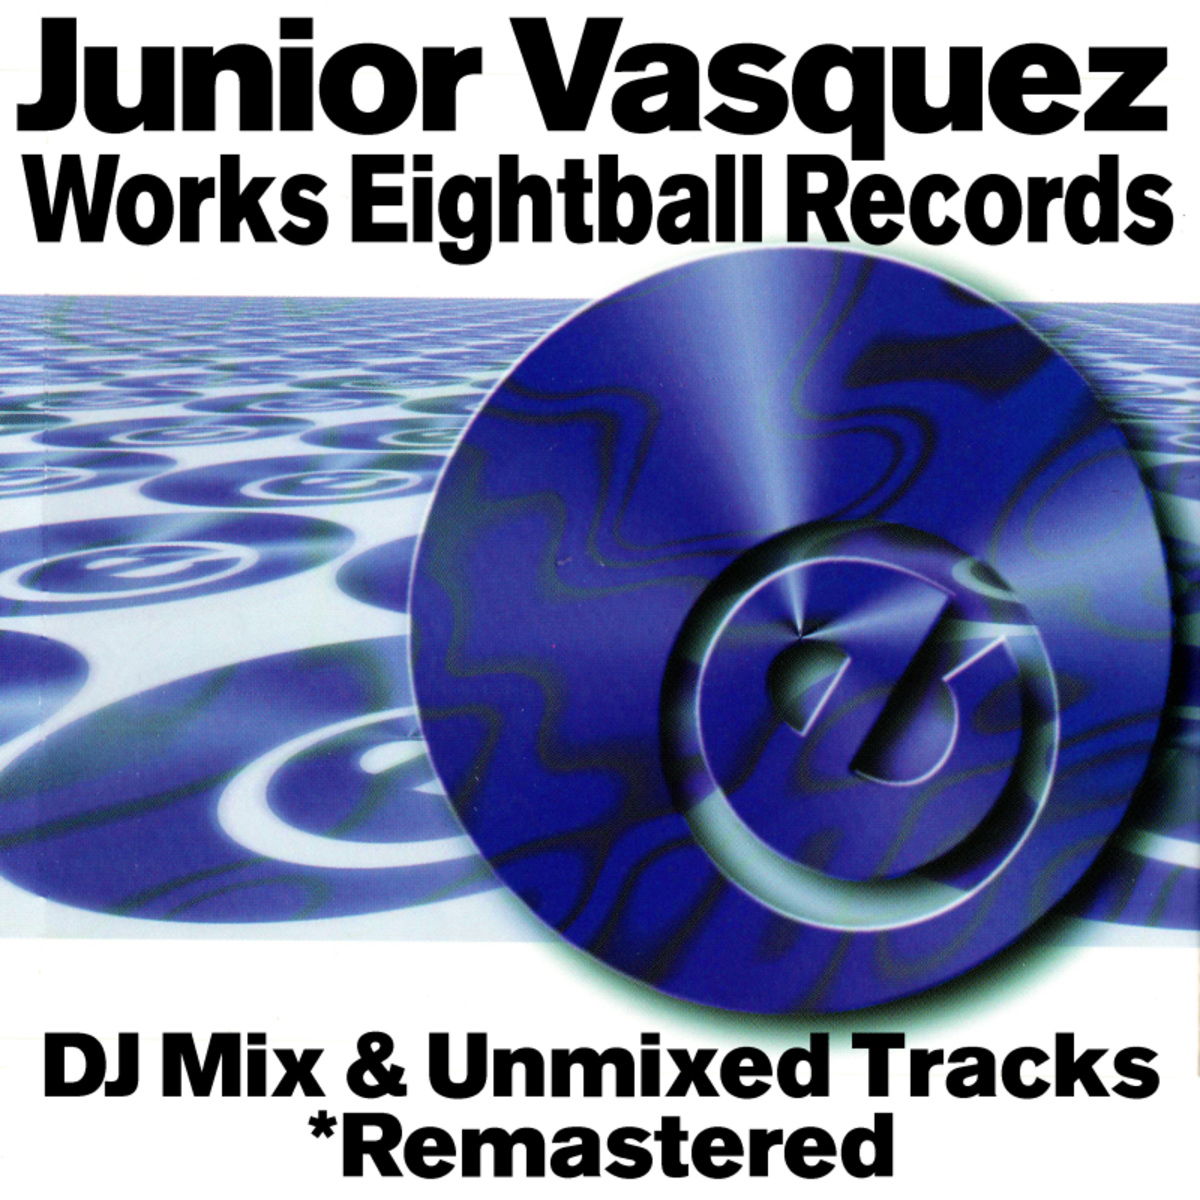 VA Junior Vasquez Works Unmixed Tracks / Eightball Records Digital